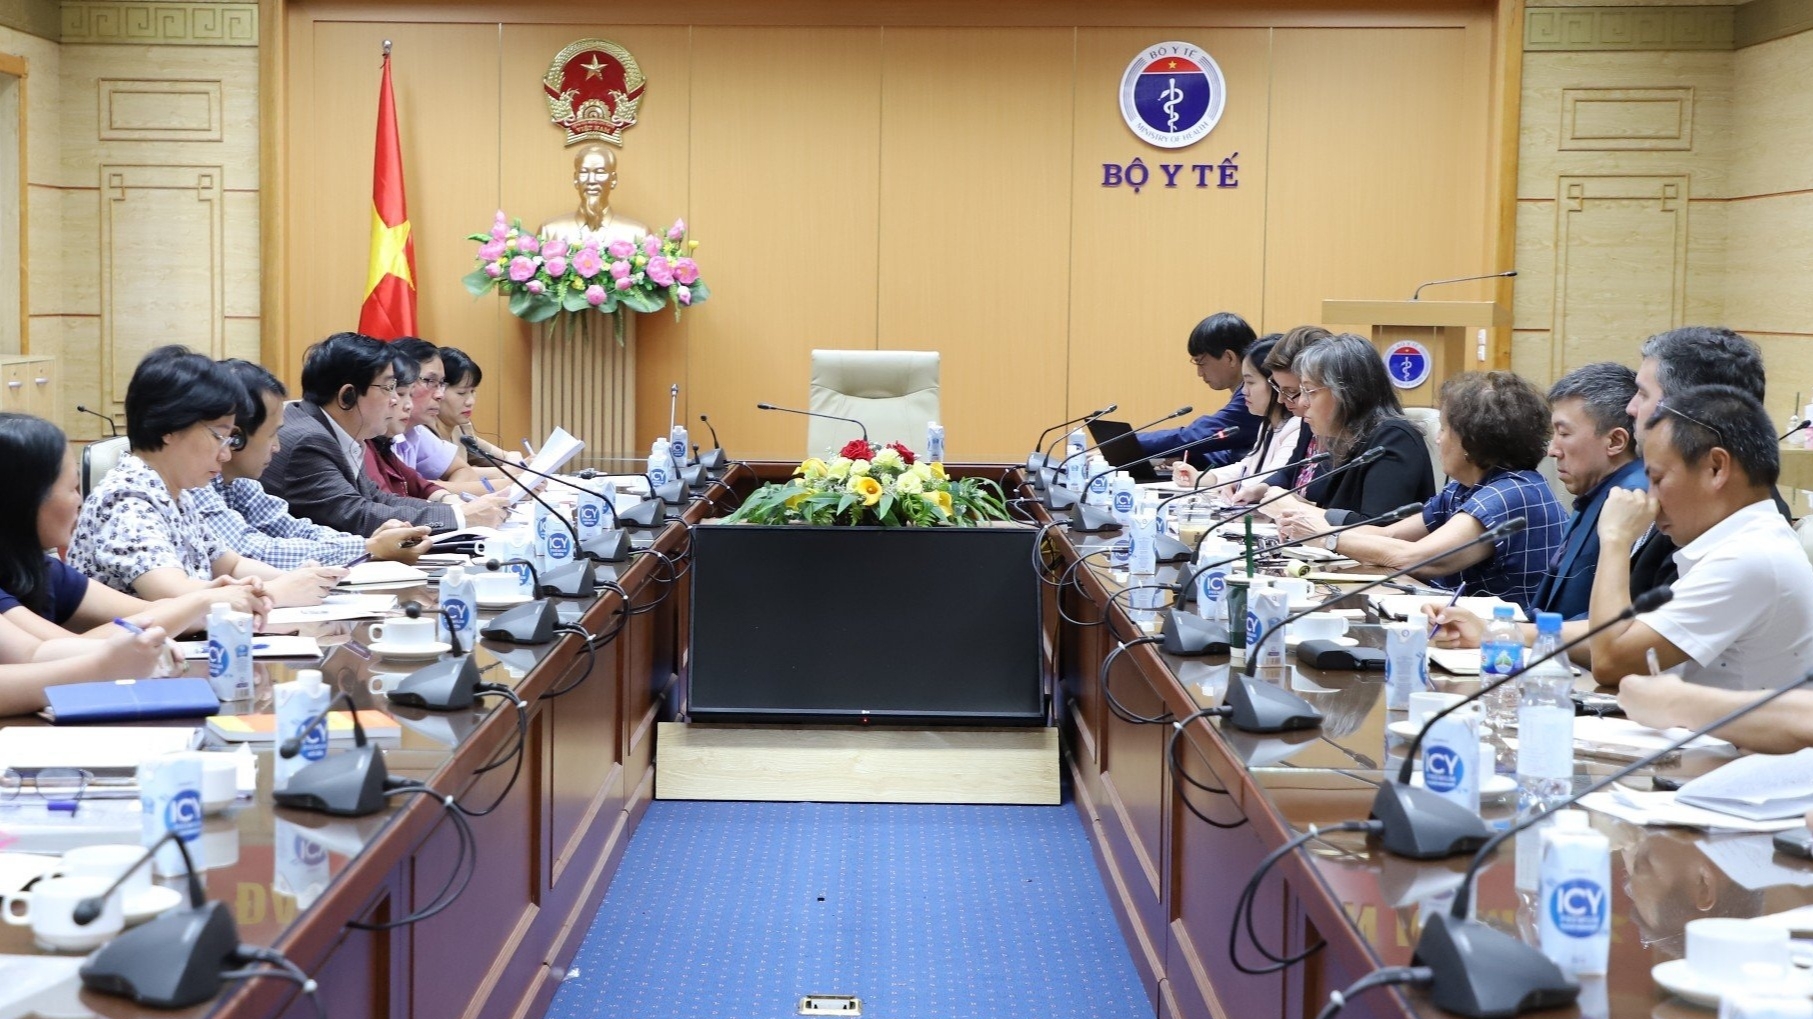 Các tổ chức quốc tế đồng hành cùng Việt Nam trong công tác phòng chống tác hại thuốc lá